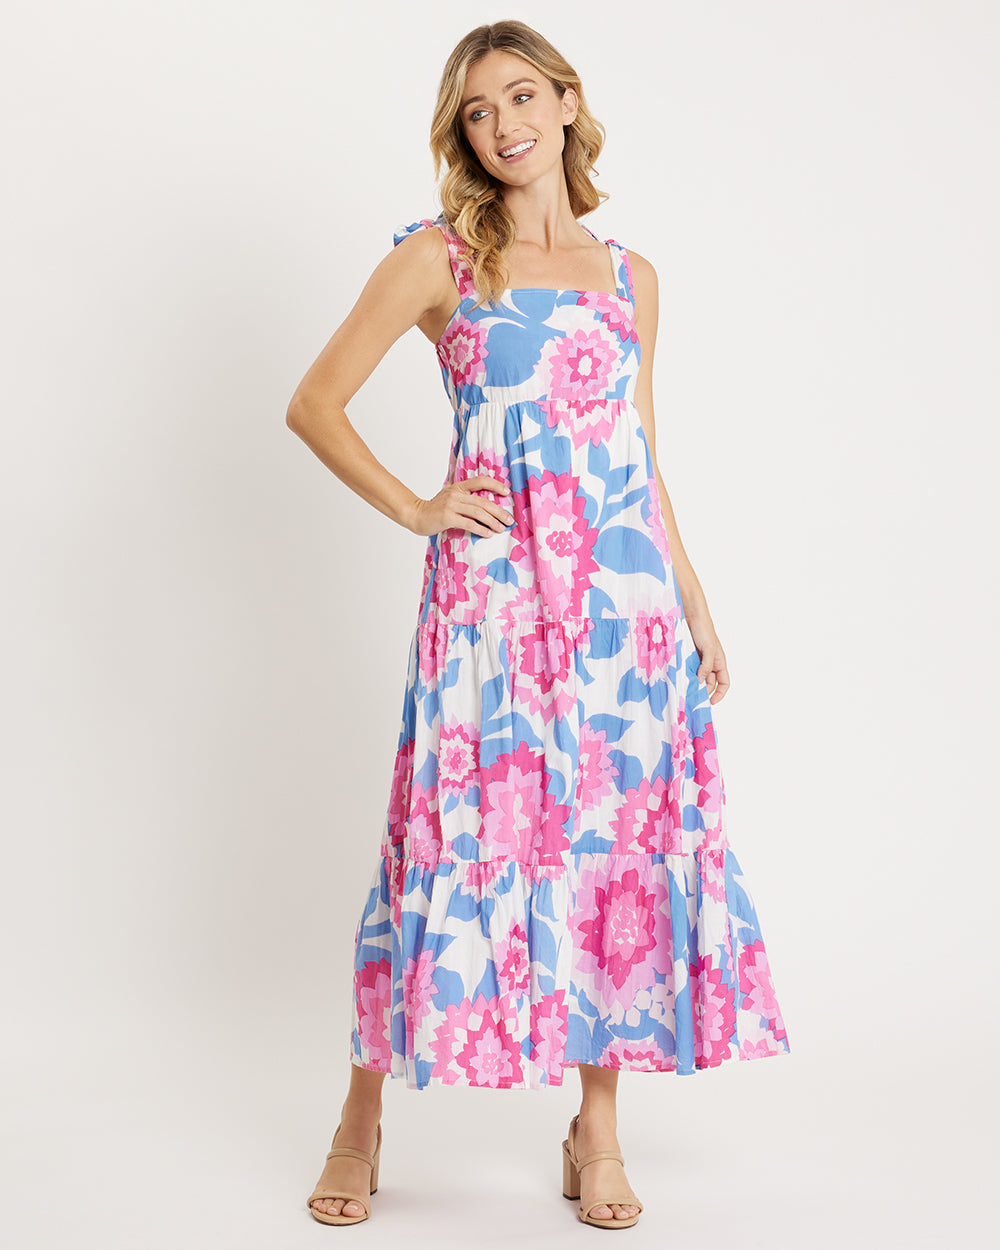 Rose Dress - Cotton Voile